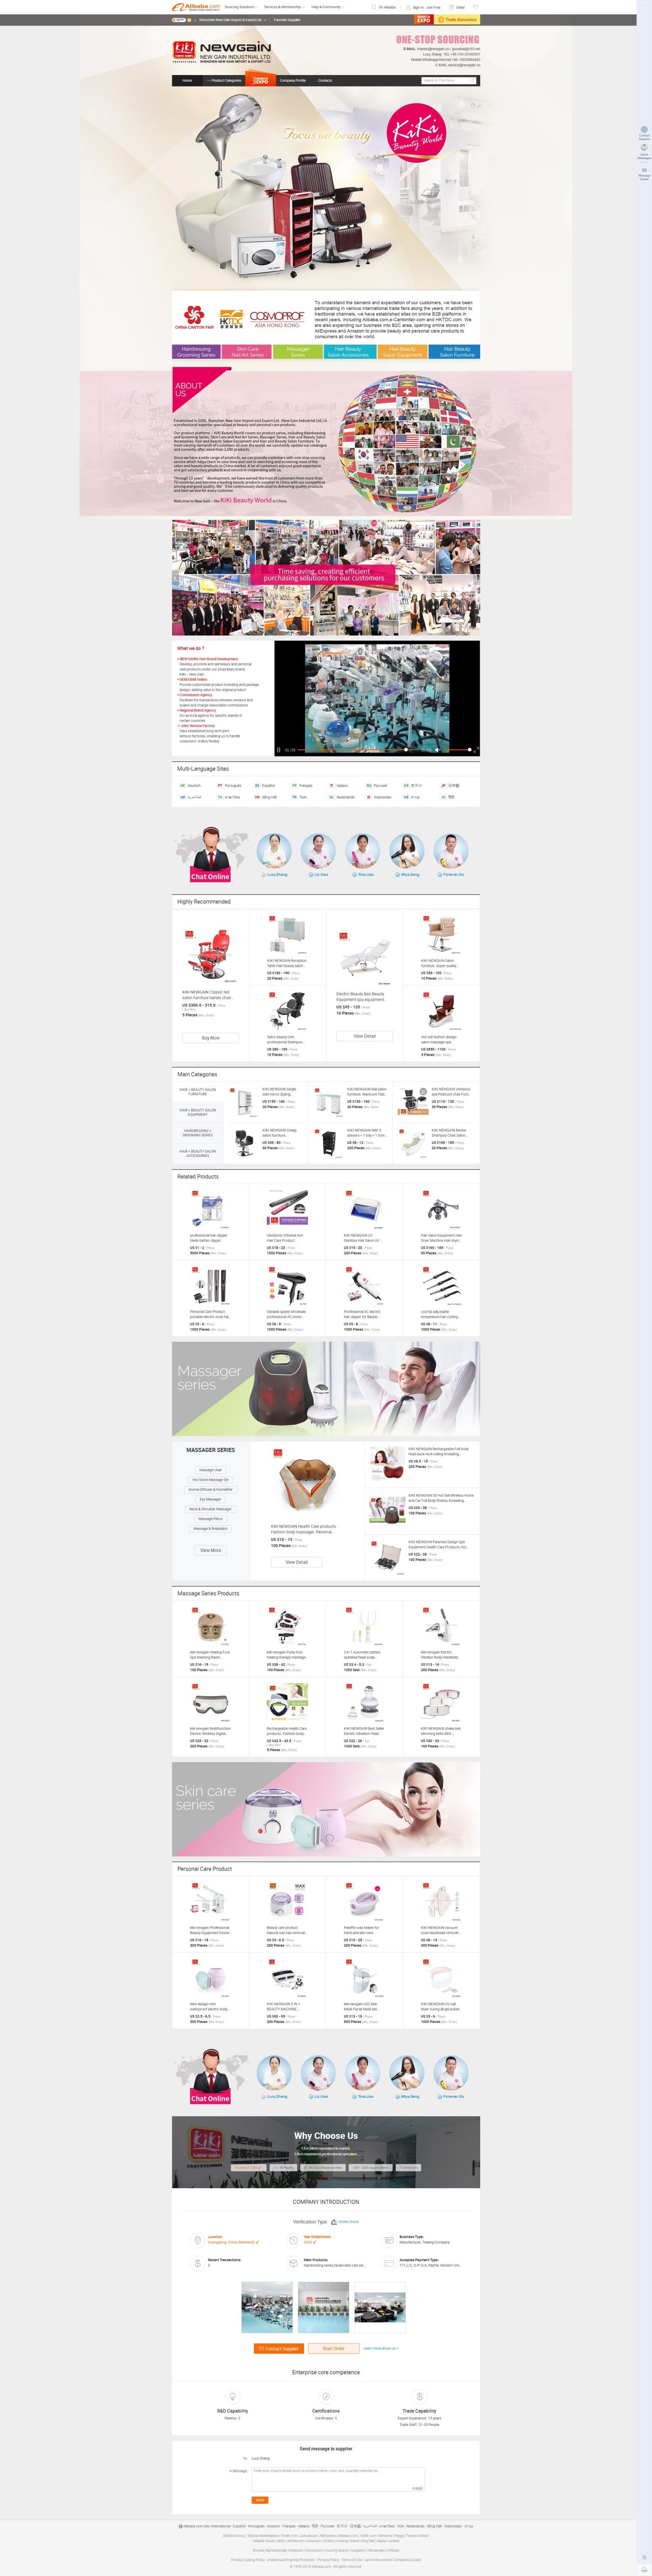 林澳公司发廊产品国际站首页设计图0